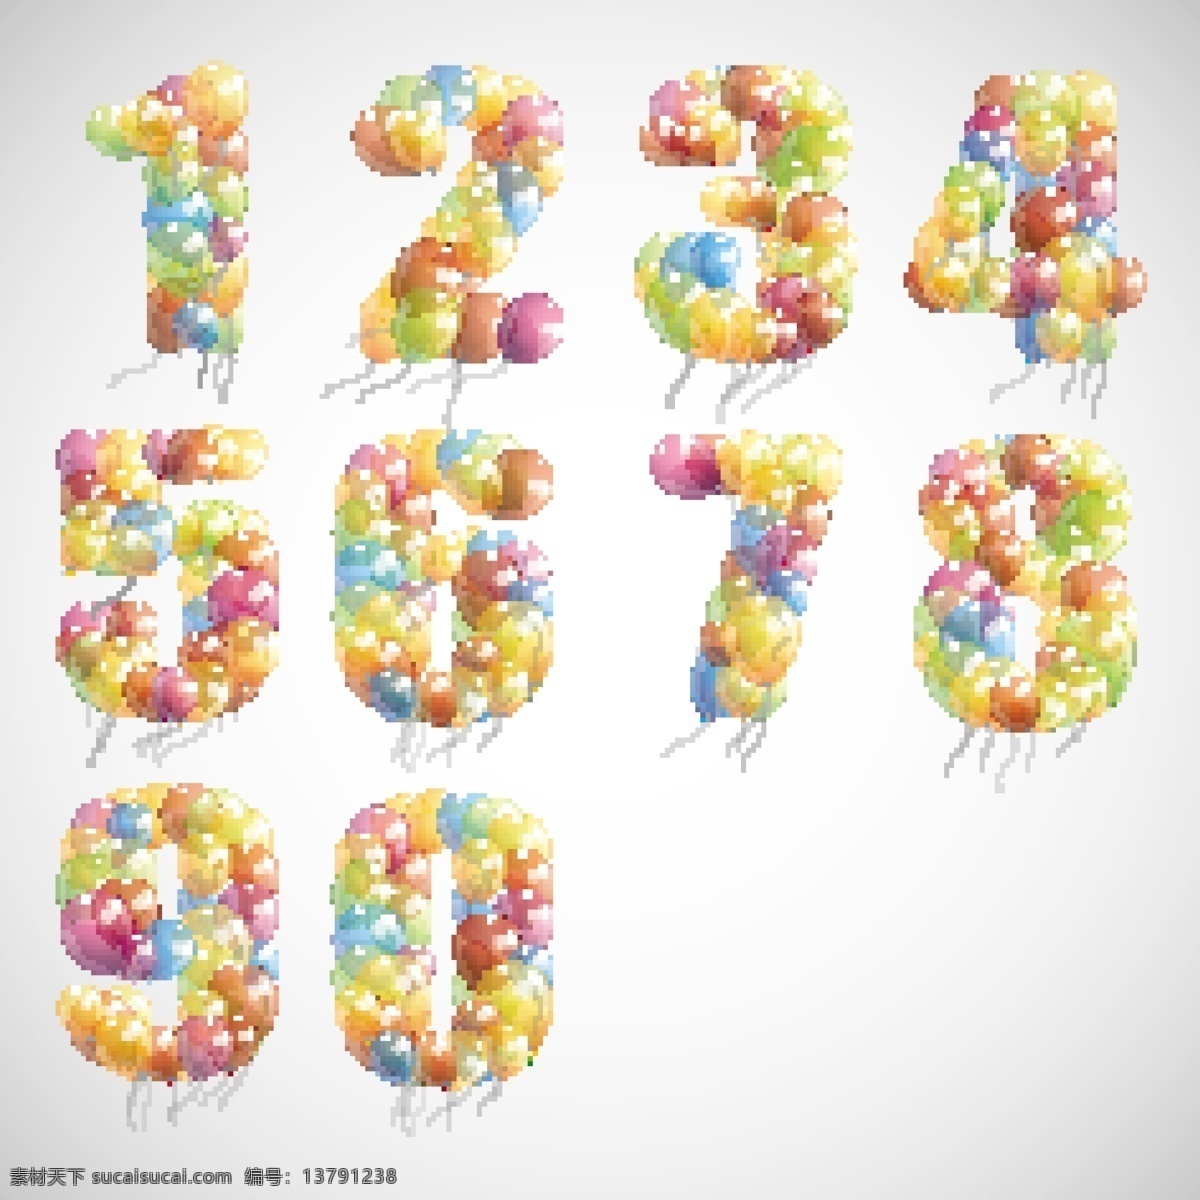 彩色气球数字 数字 气球数字 卡通数字 立体数字 创意数字 时尚数字 数字主题 矢量